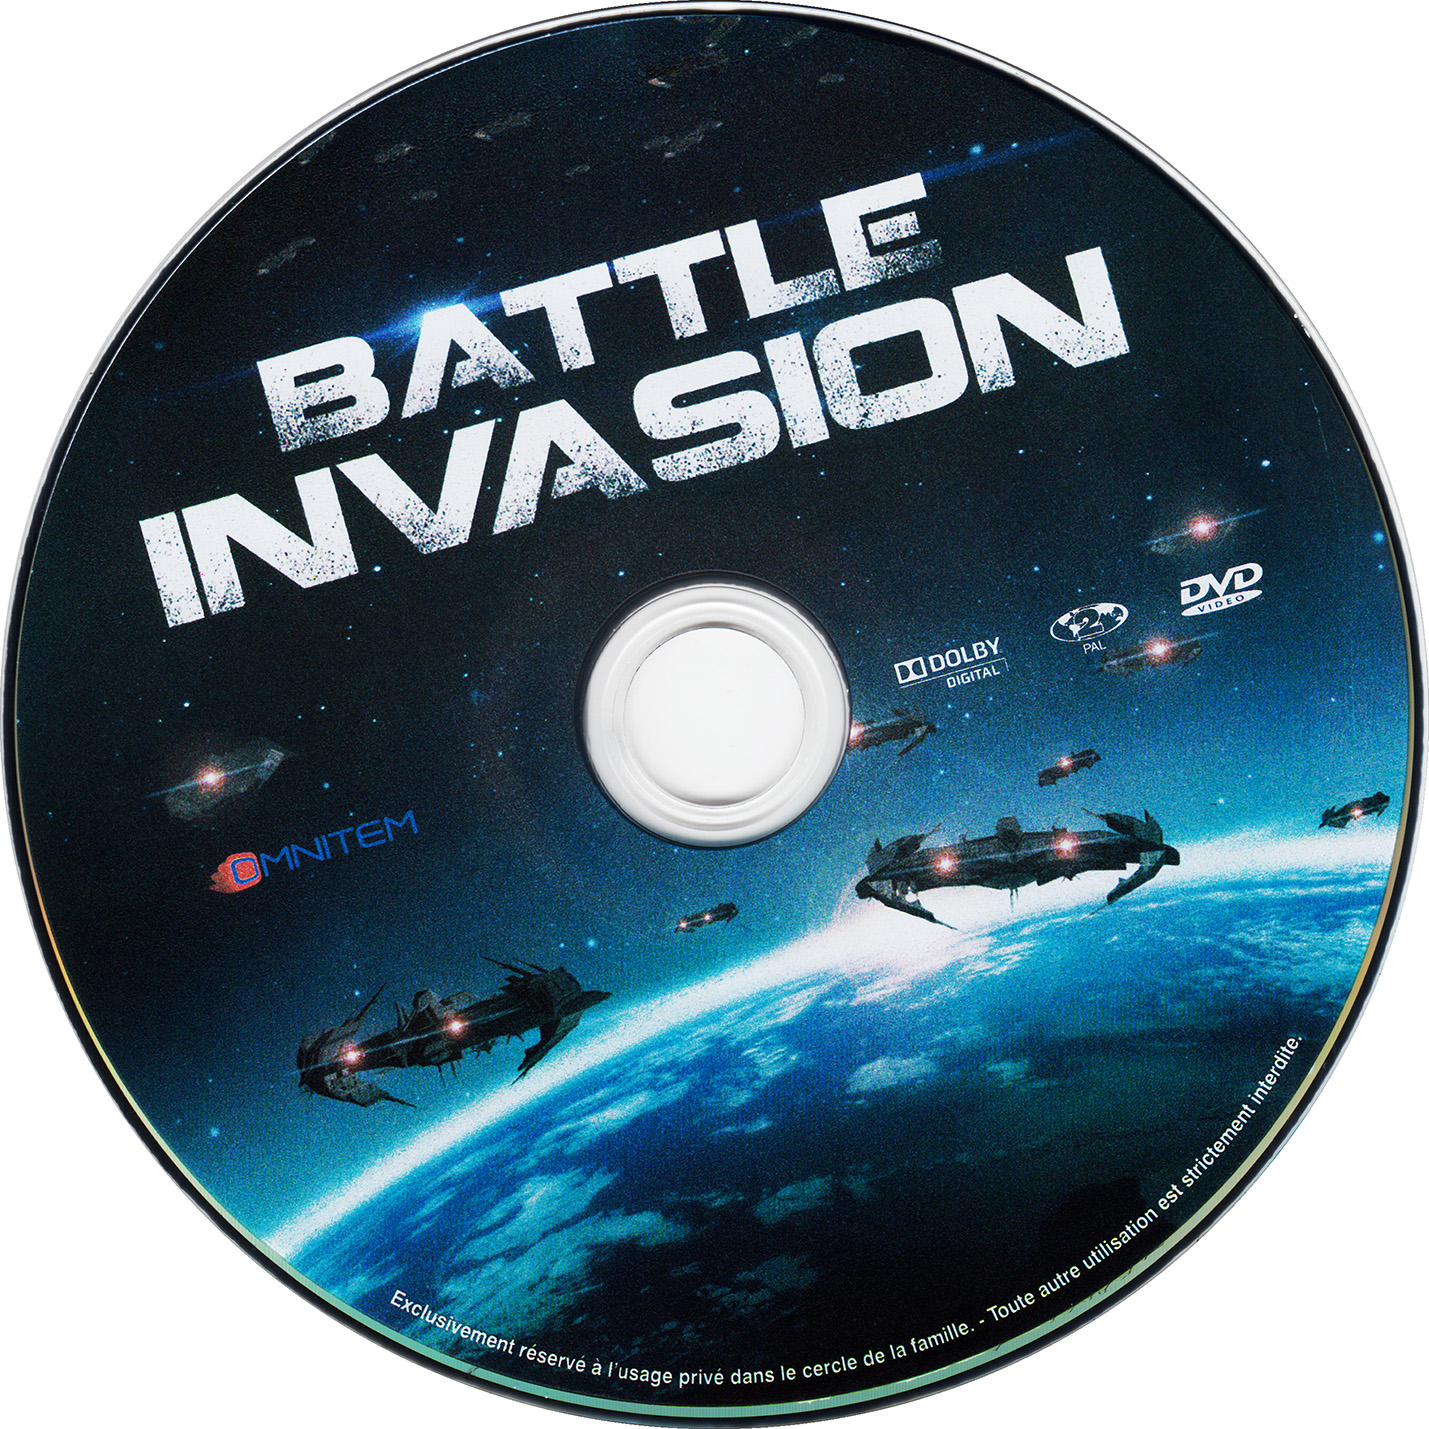 Battle invasion